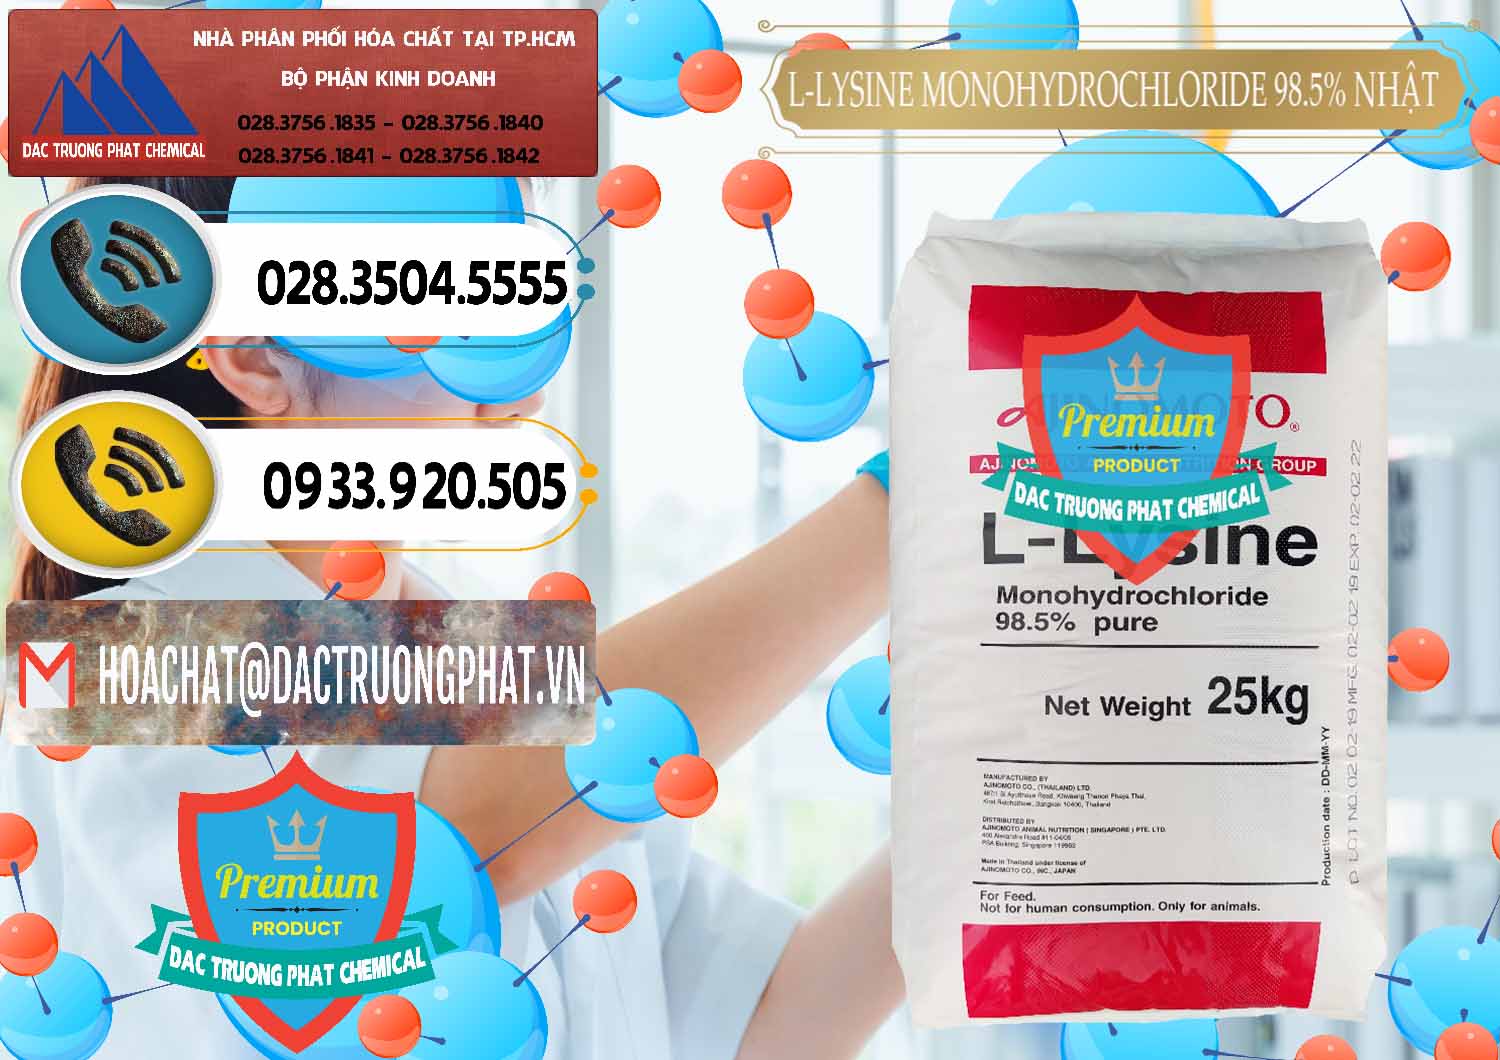 Đơn vị bán & phân phối L-Lysine Monohydrochloride Feed Grade Ajinomoto Nhật Bản Japan - 0315 - Cty chuyên bán & cung cấp hóa chất tại TP.HCM - hoachatdetnhuom.vn